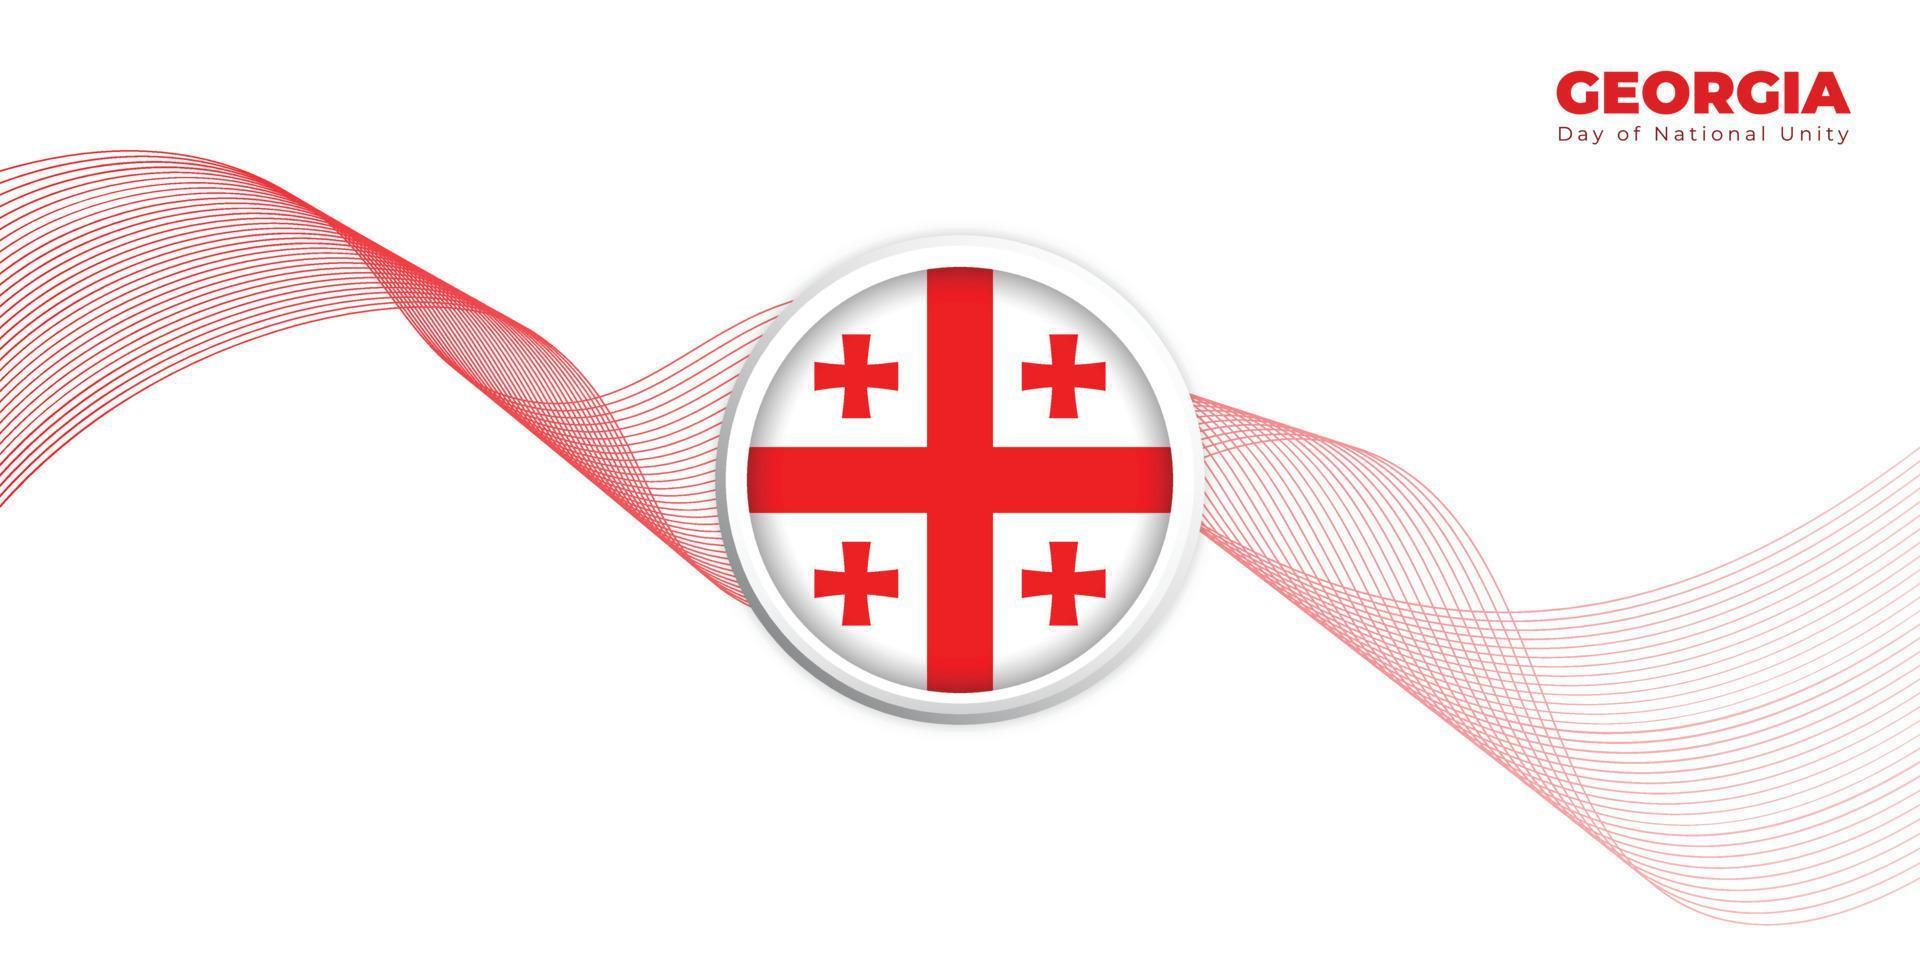 Georgiens dag för nationell enhet design med vit bakgrund. emblem av Georgien flaggdesign. vektor